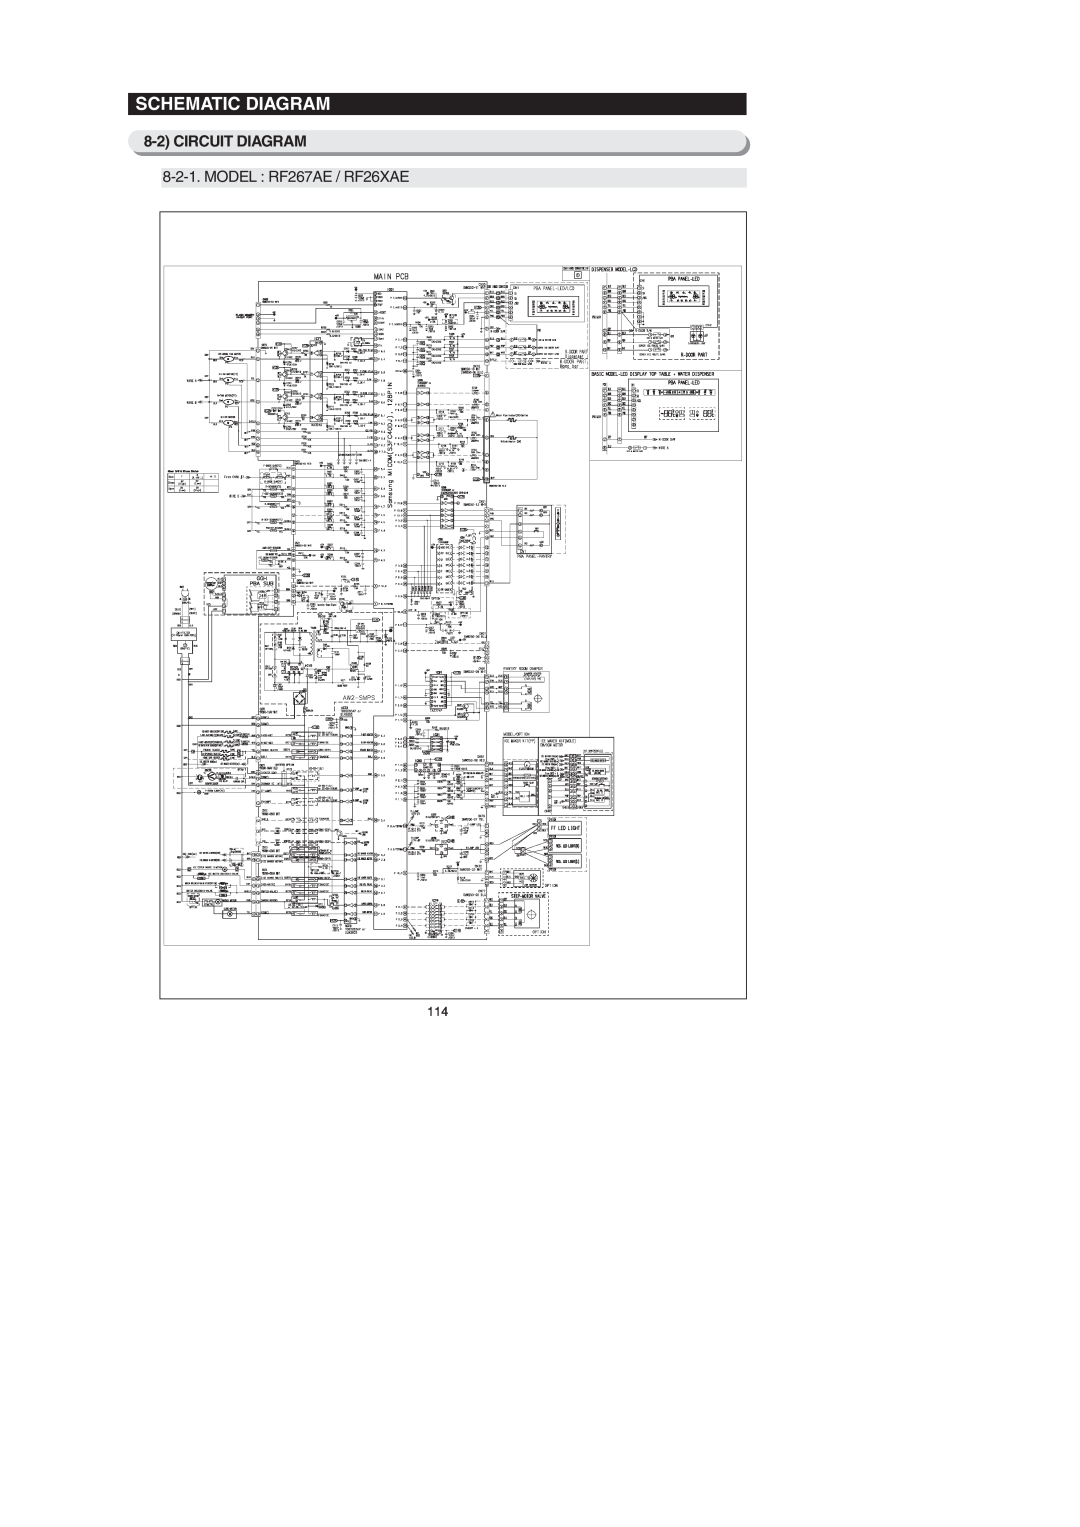 Samsung RF26XAEXAA, RF267AEBP, RF267AE**, RF26XAERS, RF26XAEPN Schematic Diagram, MODEL RF267AE / RF26XAE, Circuit Diagram 